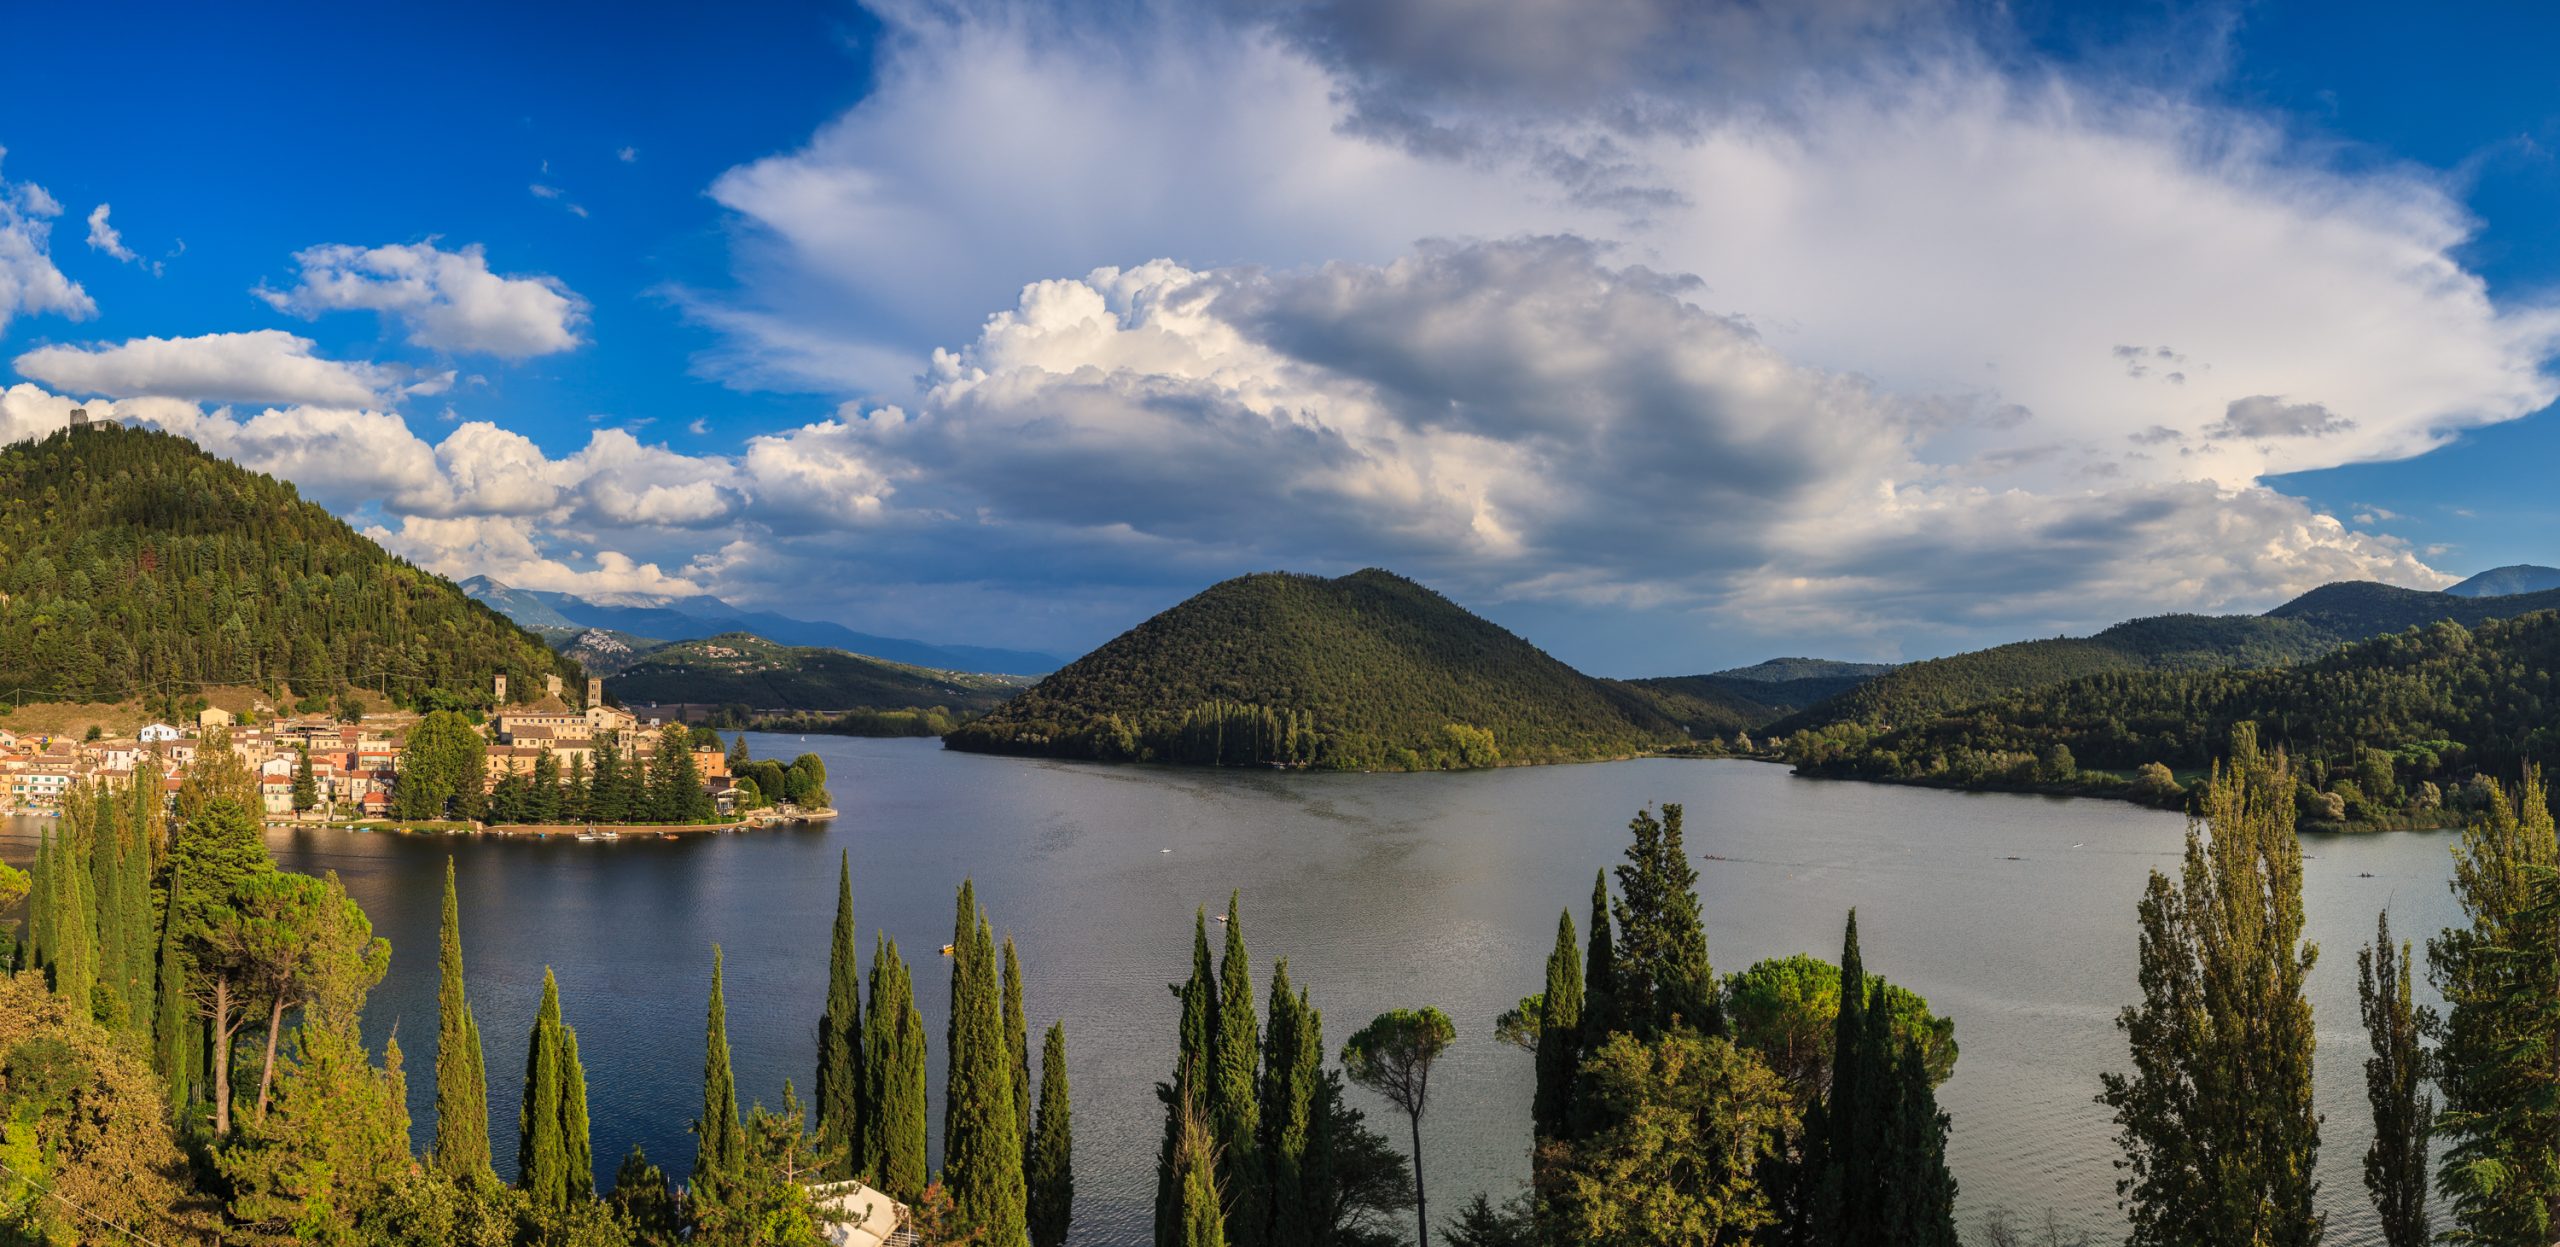 Lago_di_Piediluco,_panoramica